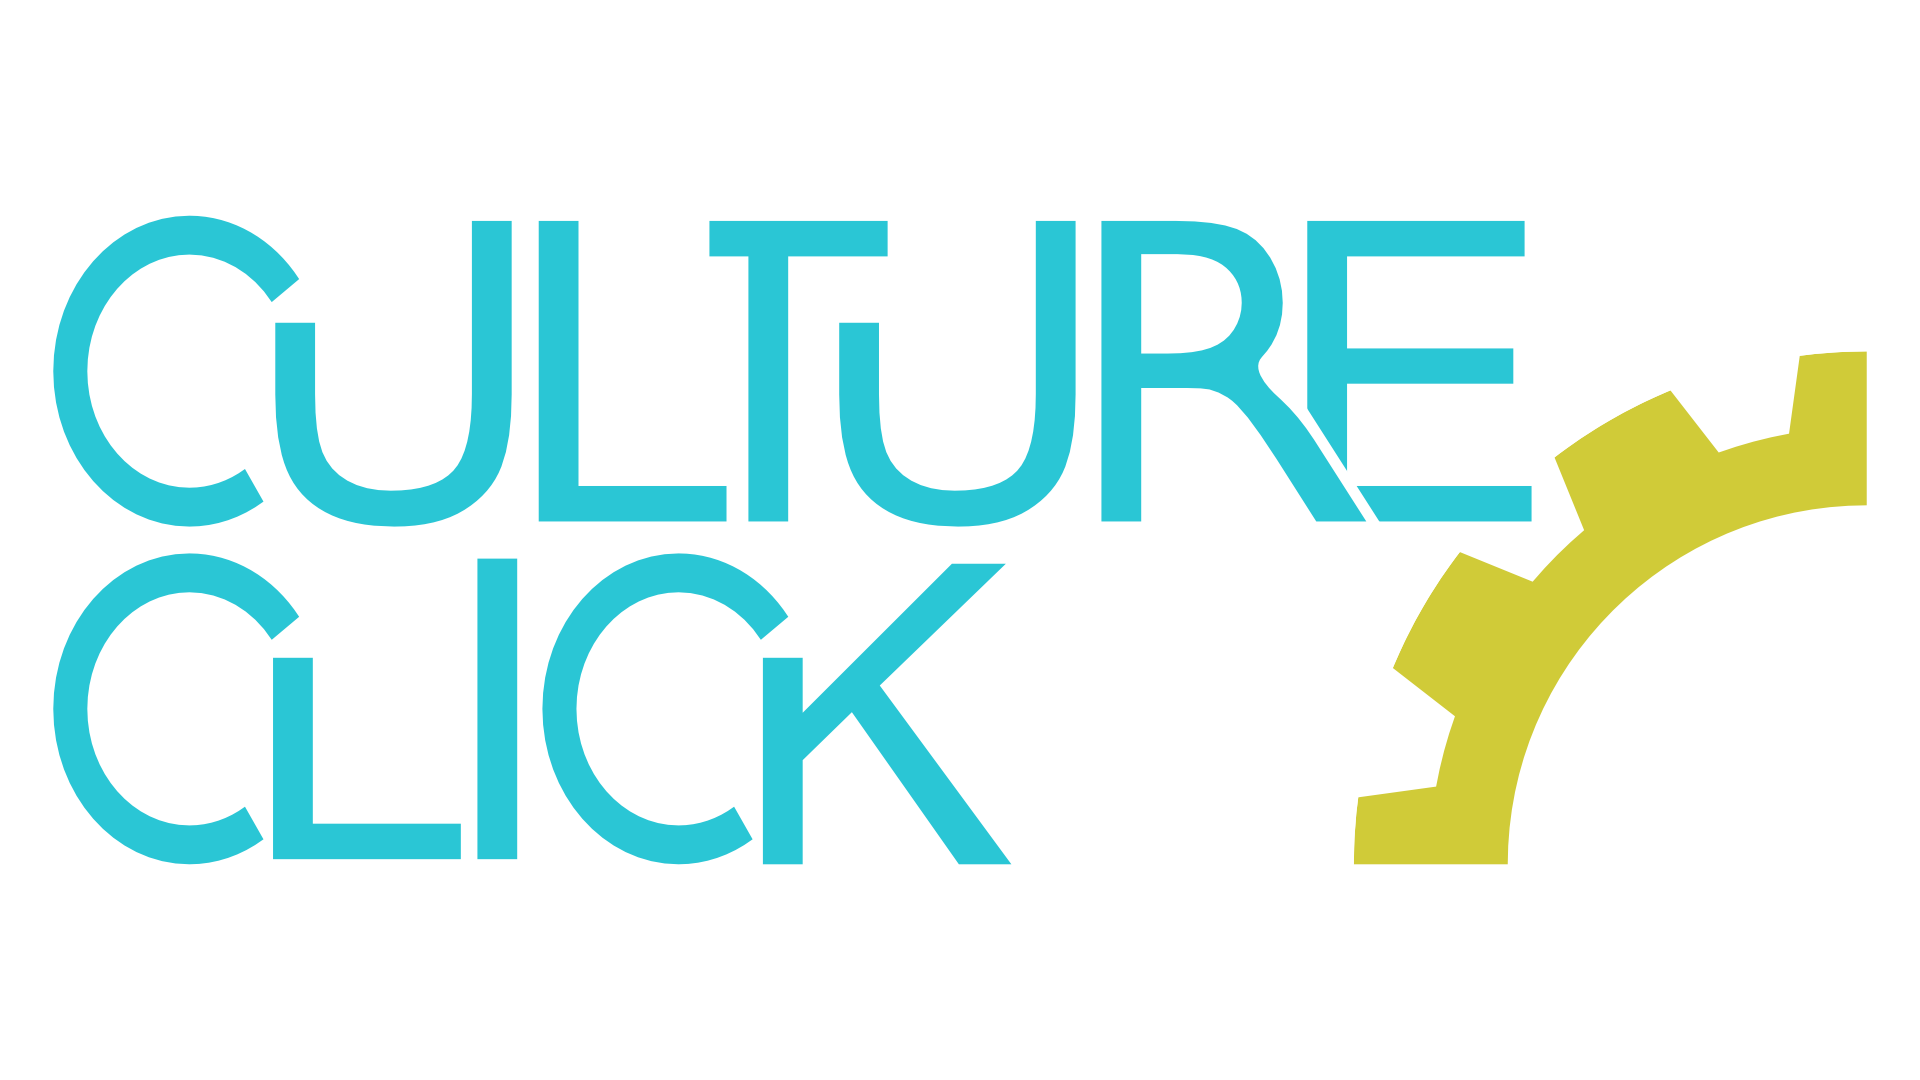 The Culture Click